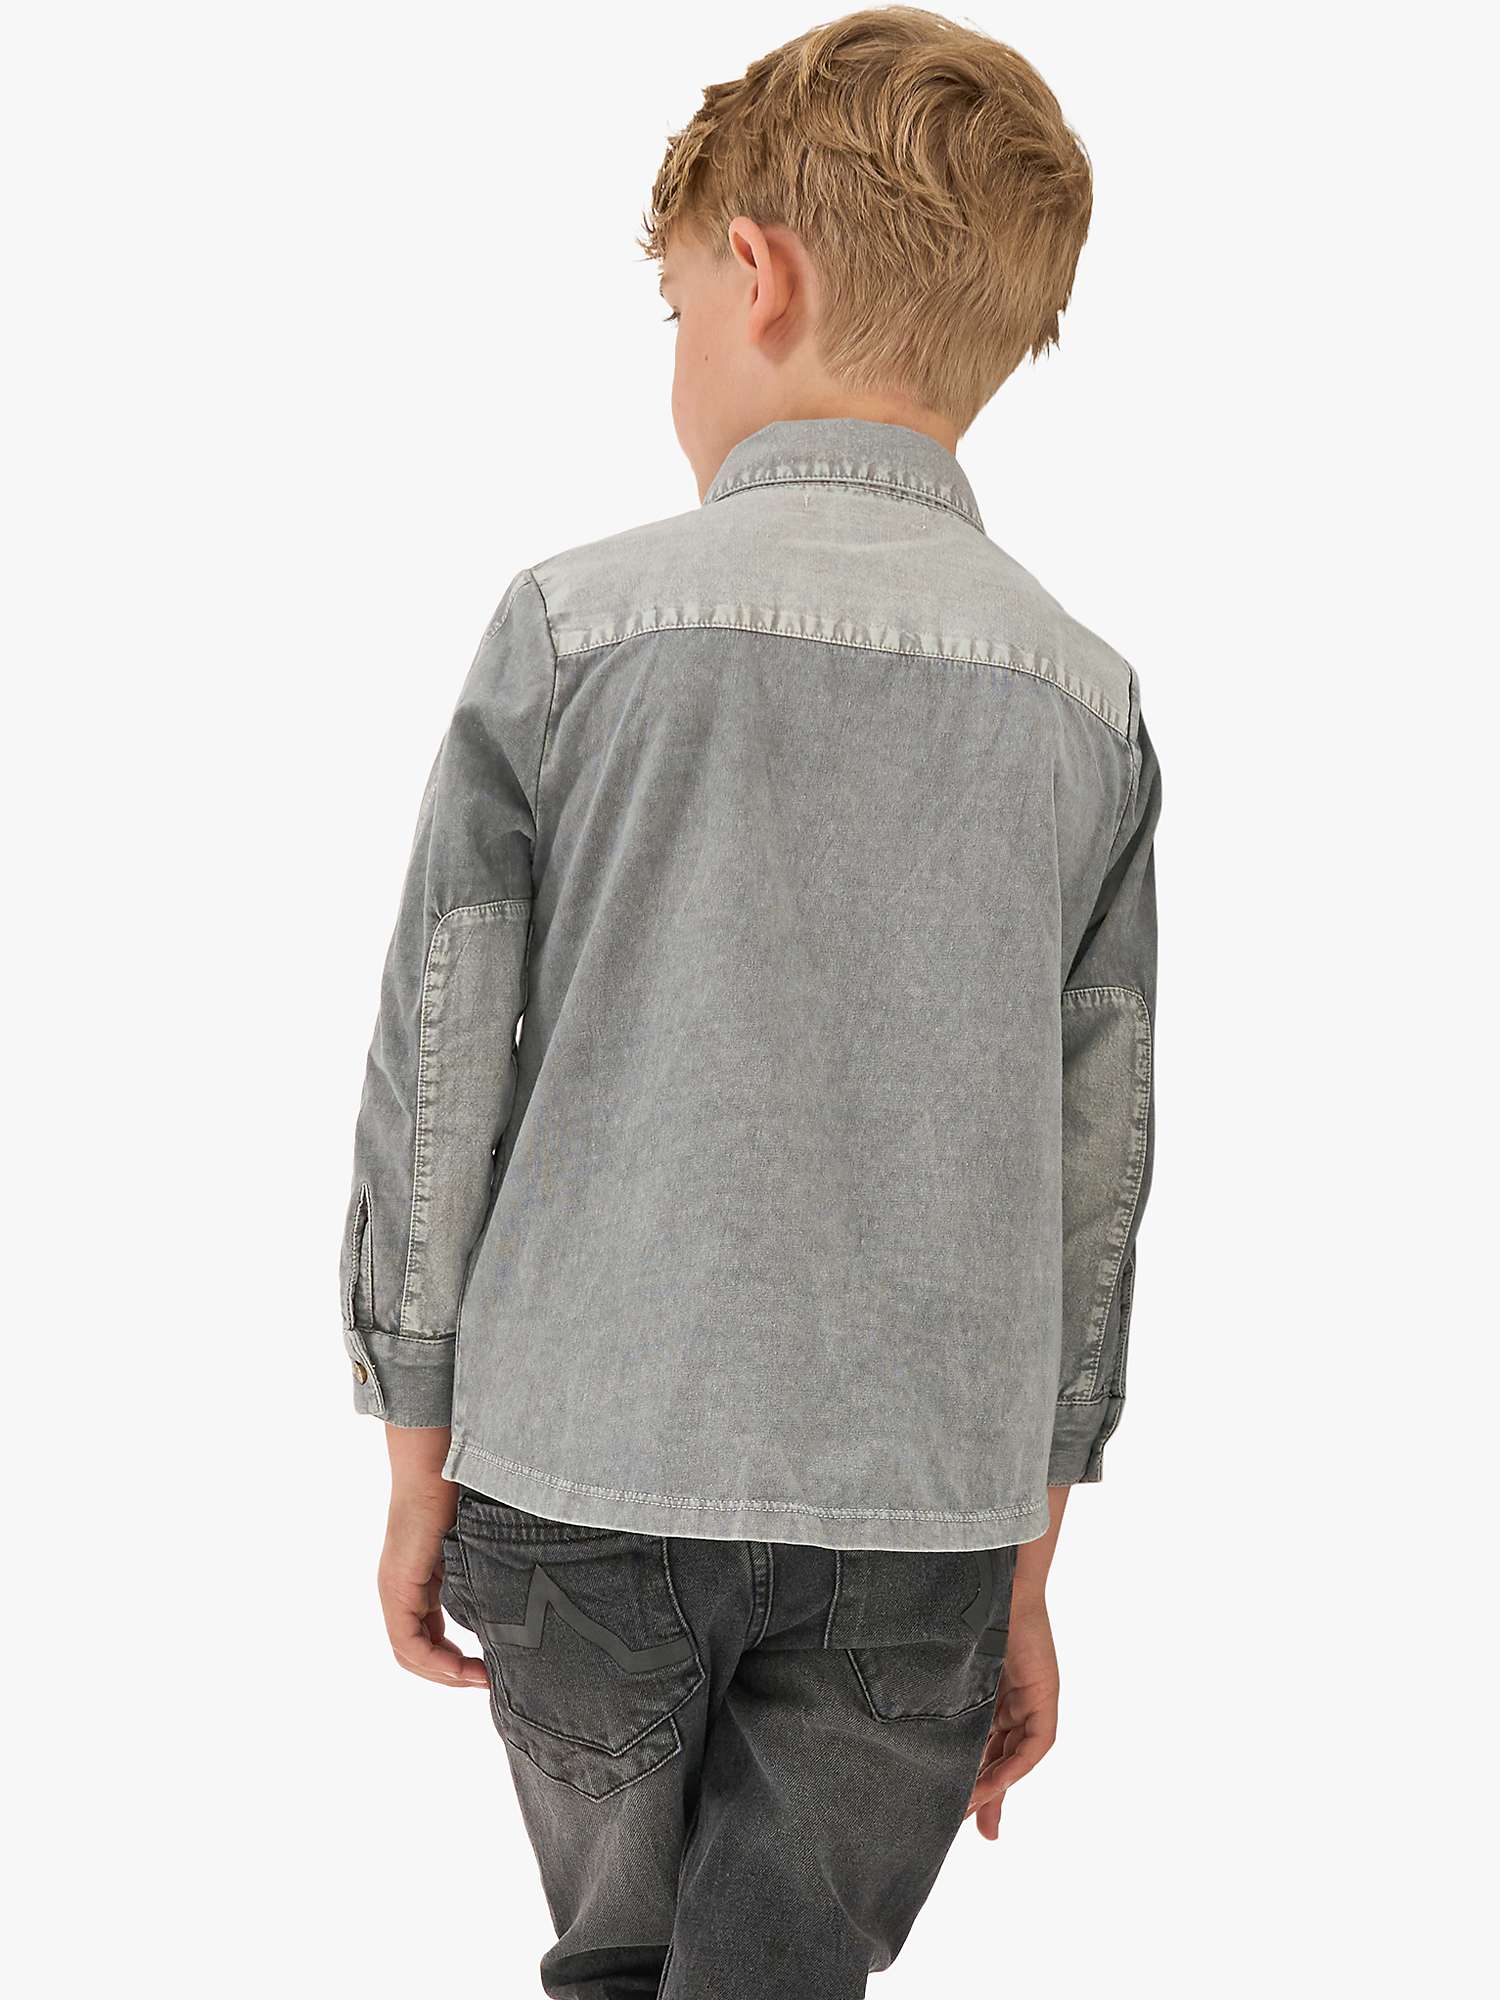 Buy Angel & Rocket Kids' Pocket Shirt, Grey Online at johnlewis.com